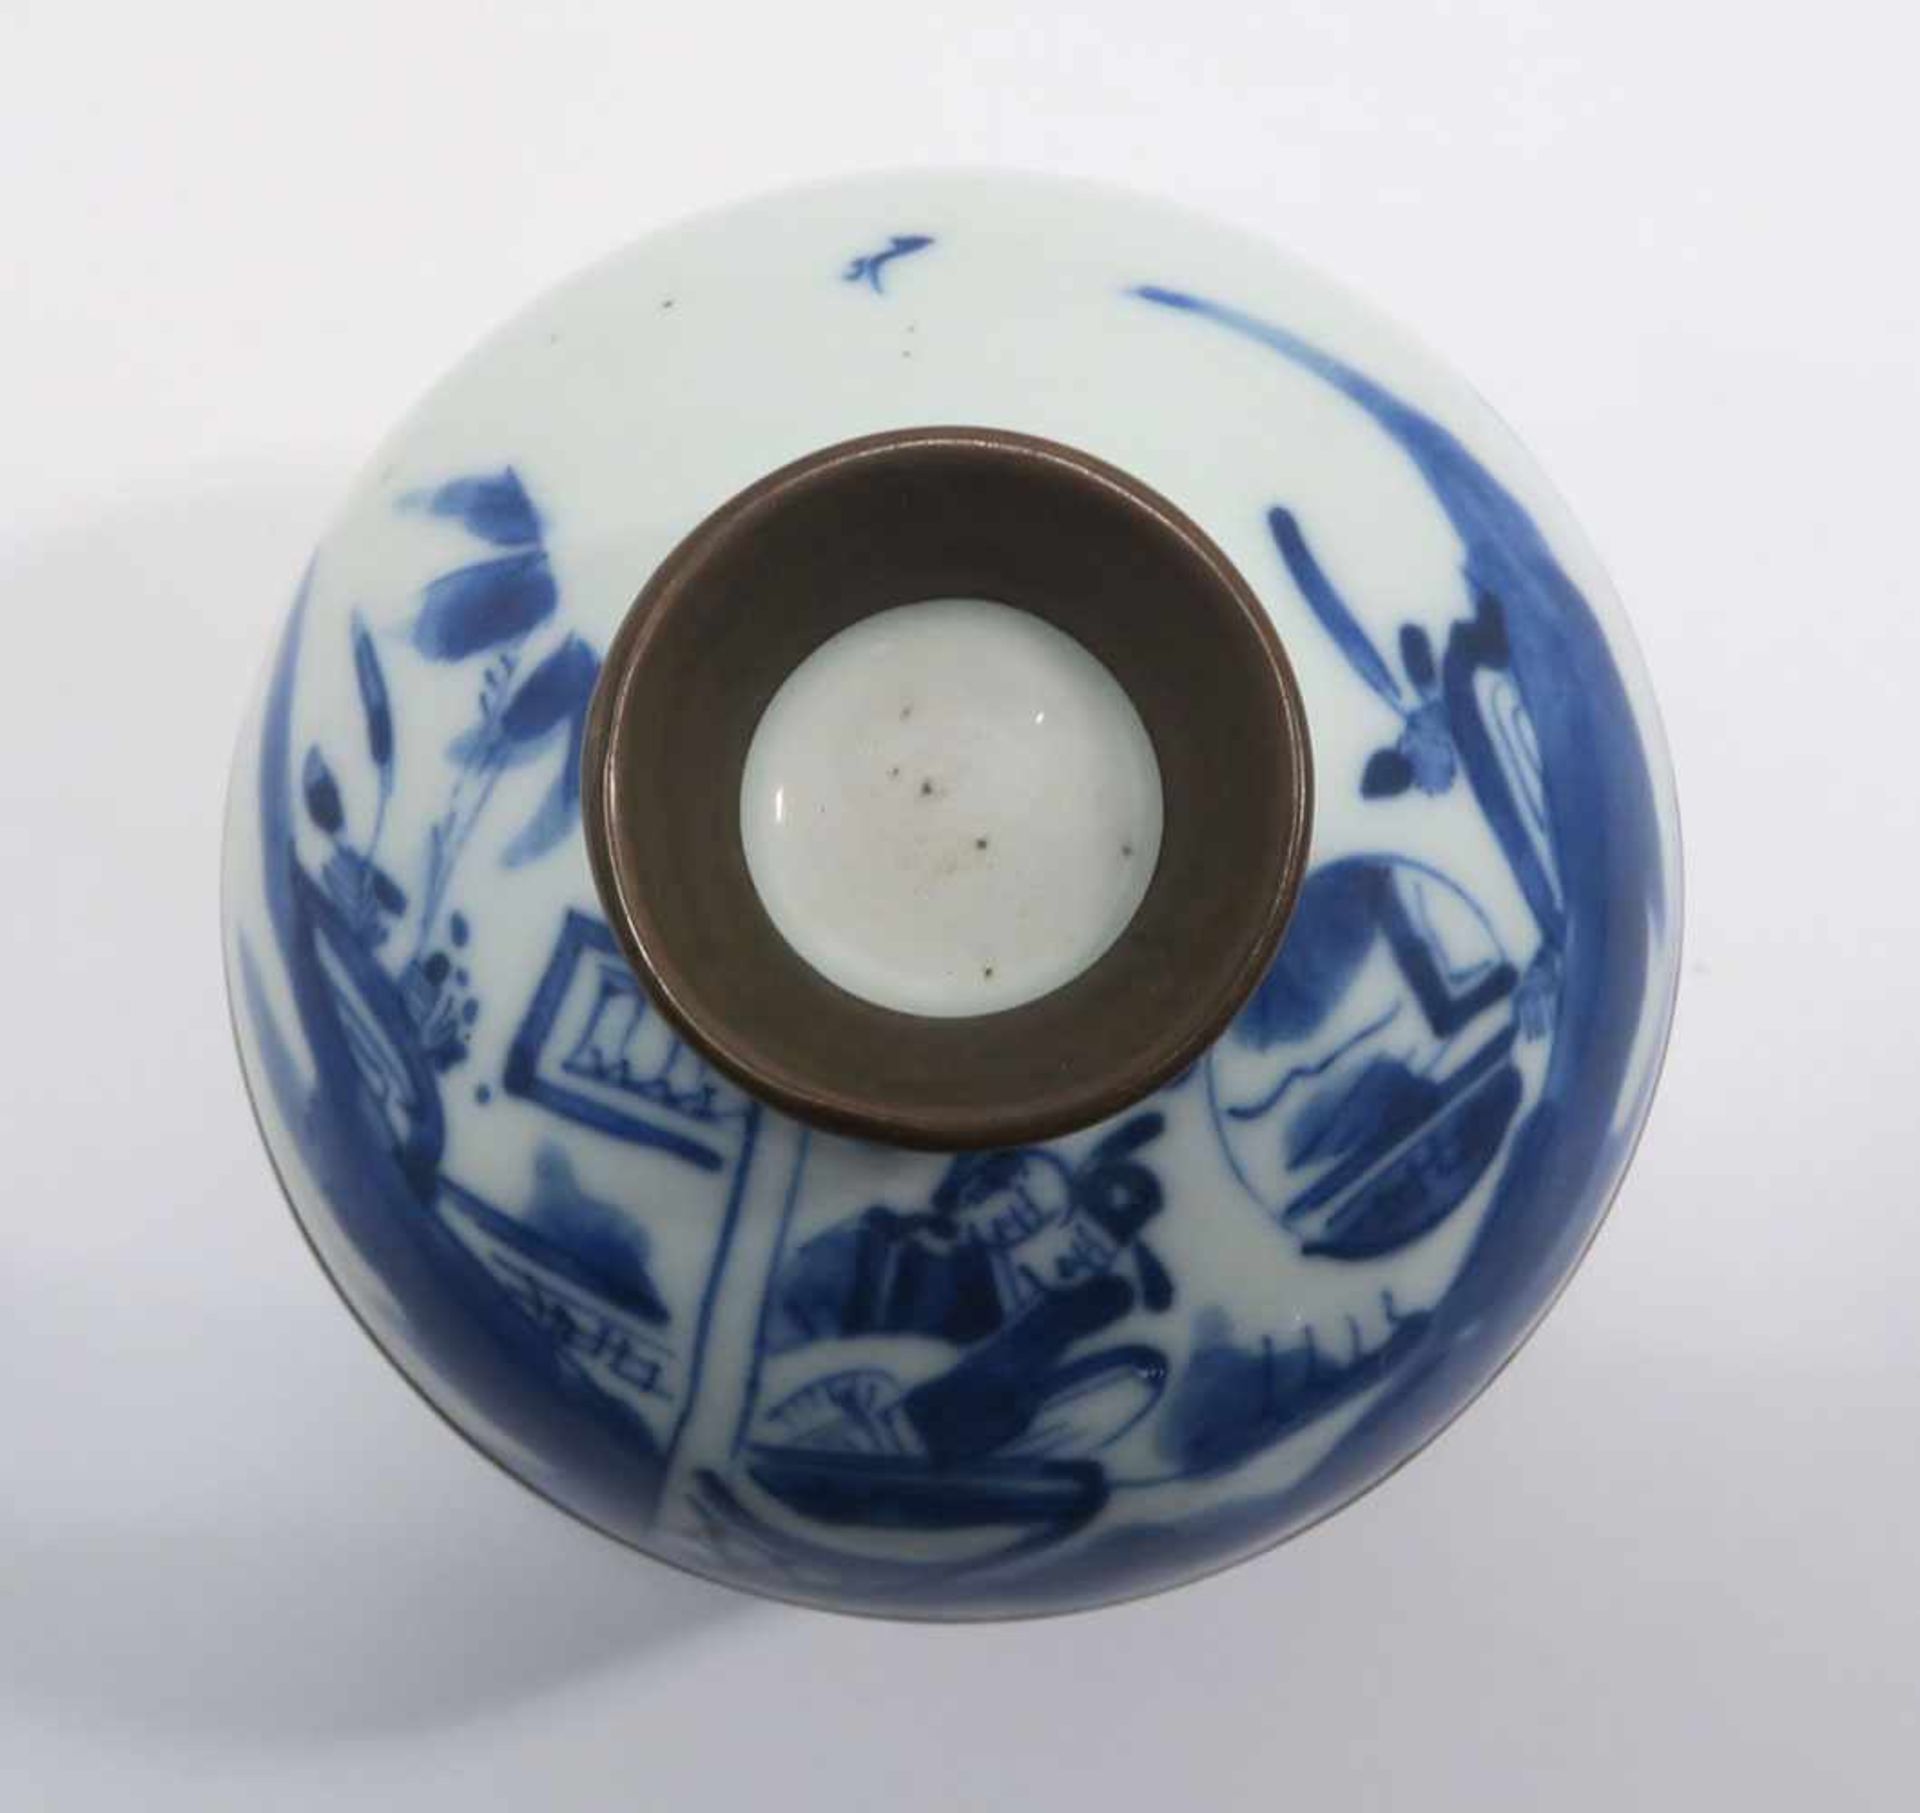 Opiumpfeife / Vase / DeckelgefäßChina. Porzellan, tlw. mit Kupfermontierung. Verschiedene bunte bzw. - Bild 12 aus 21